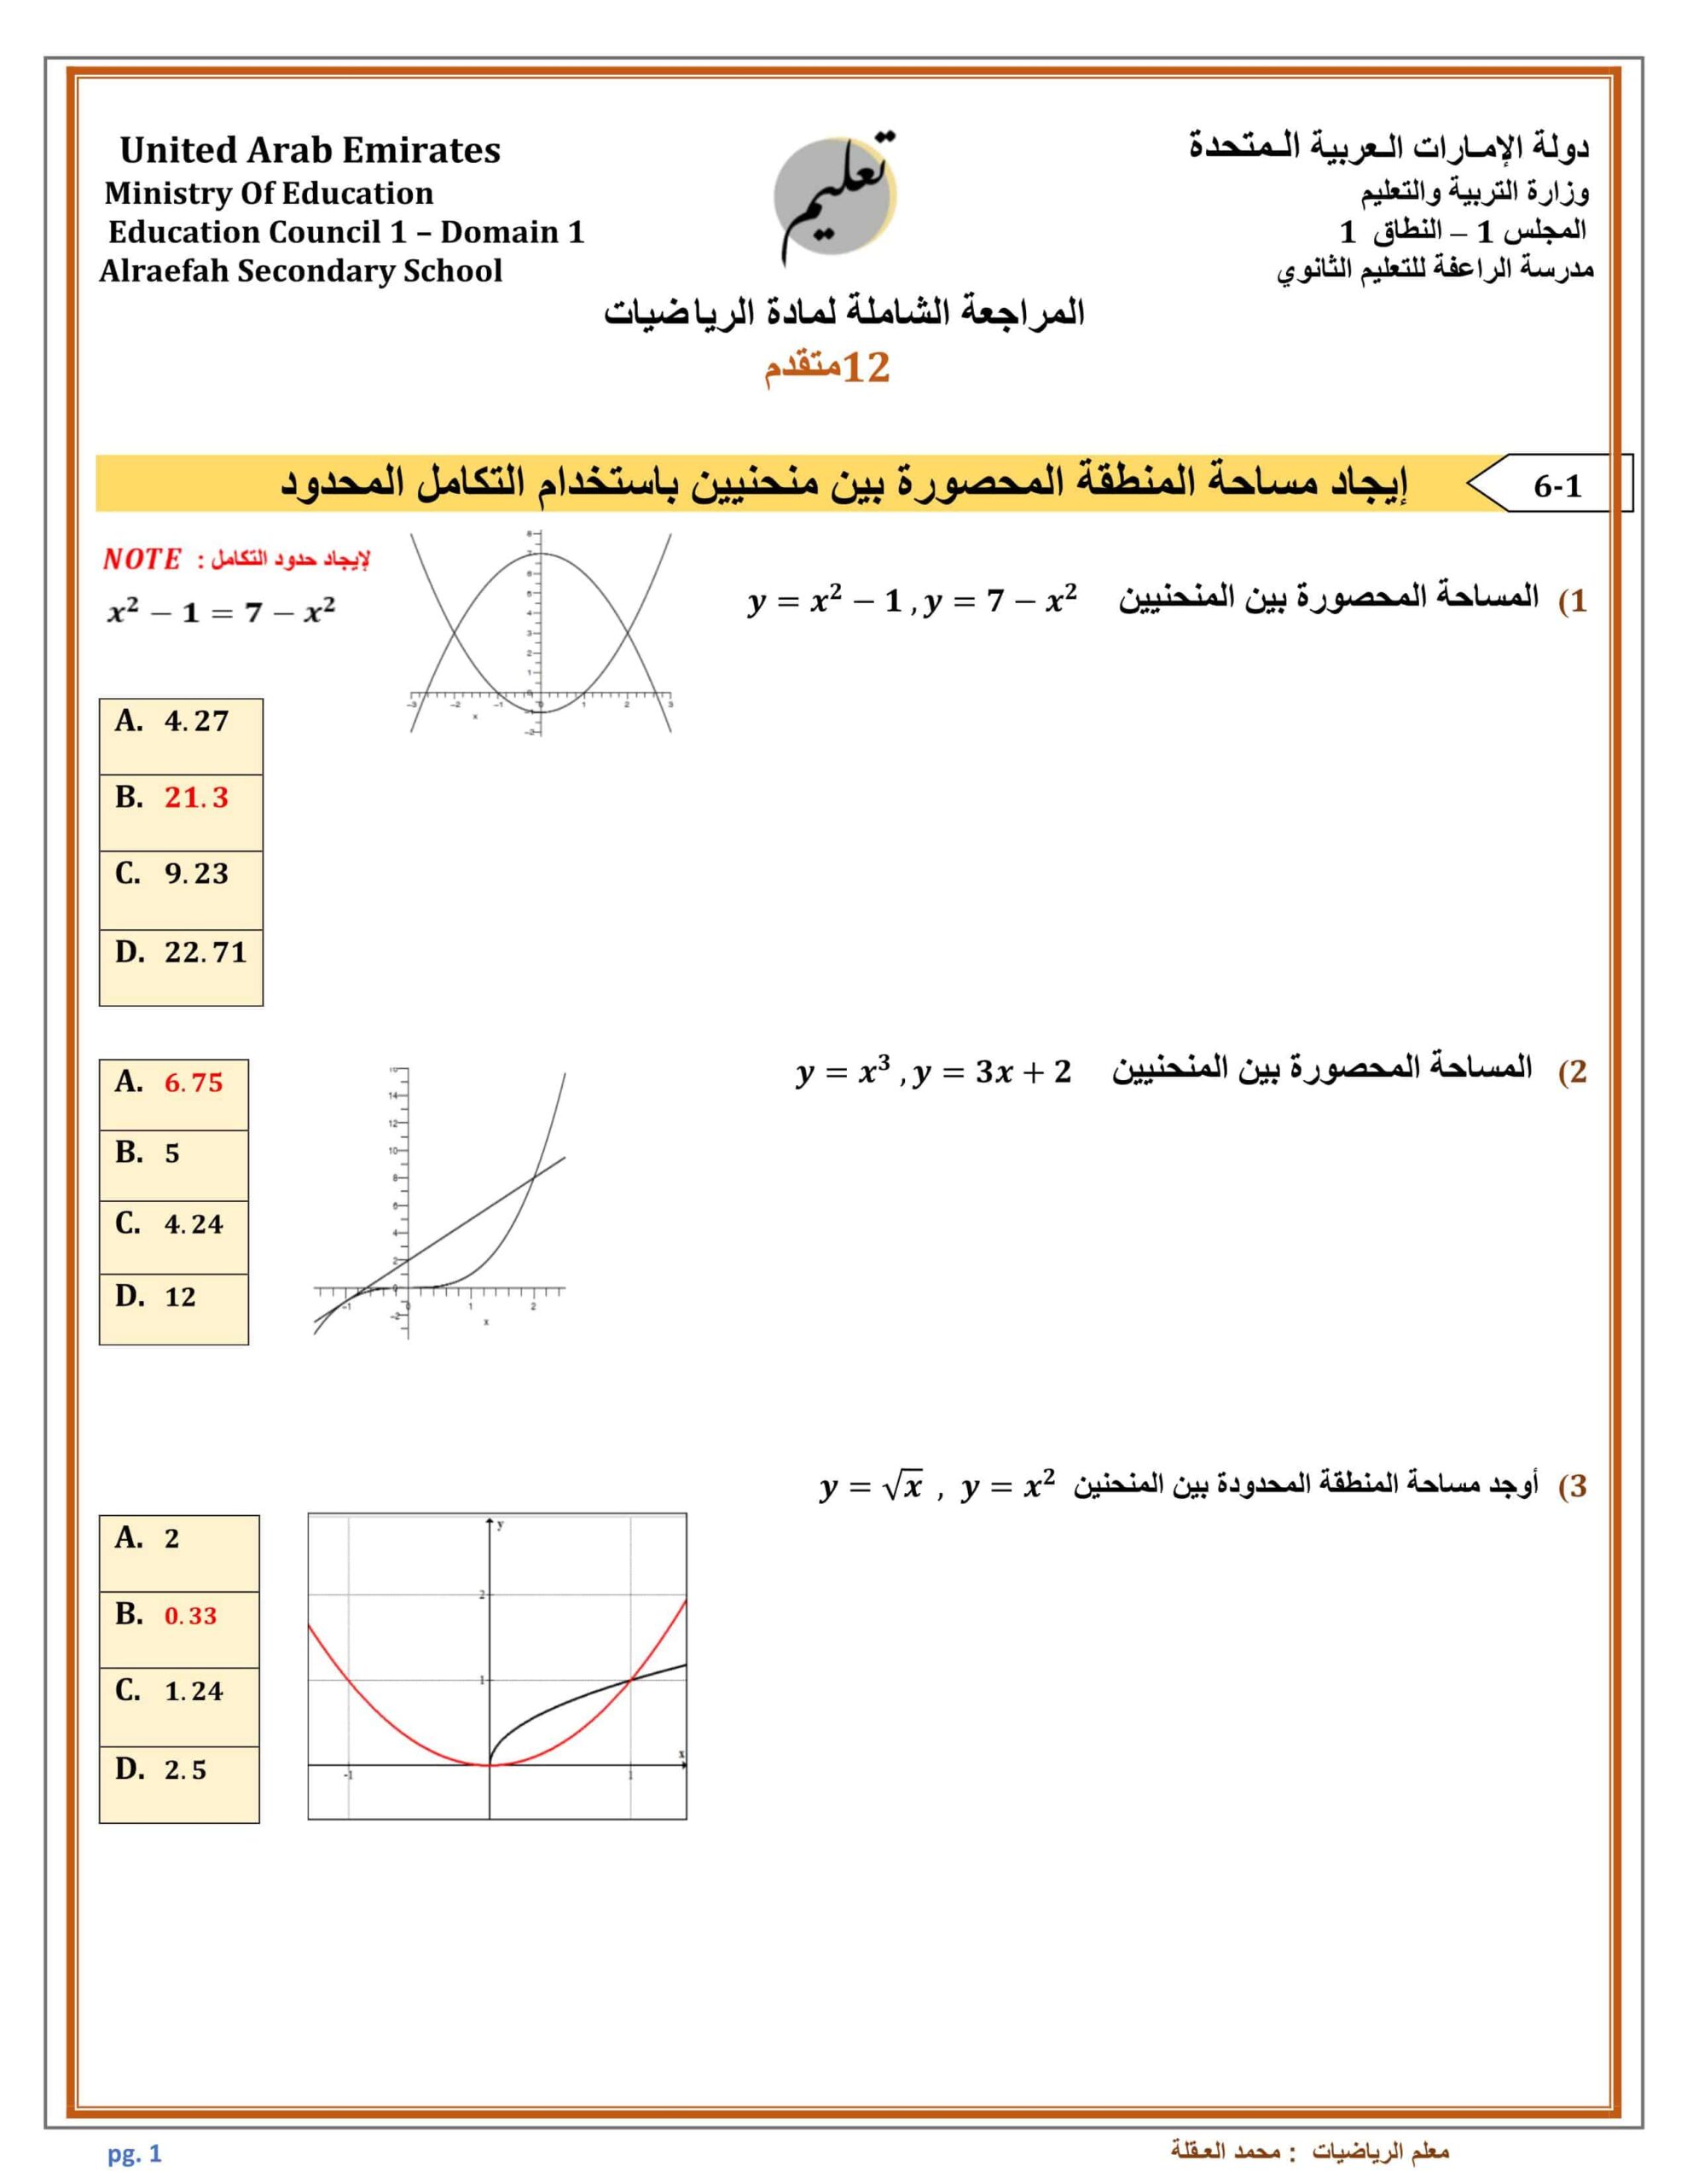 حل المراجعة الشاملة حسب الهيكل الرياضيات المتكاملة الصف الثاني عشر متقدم